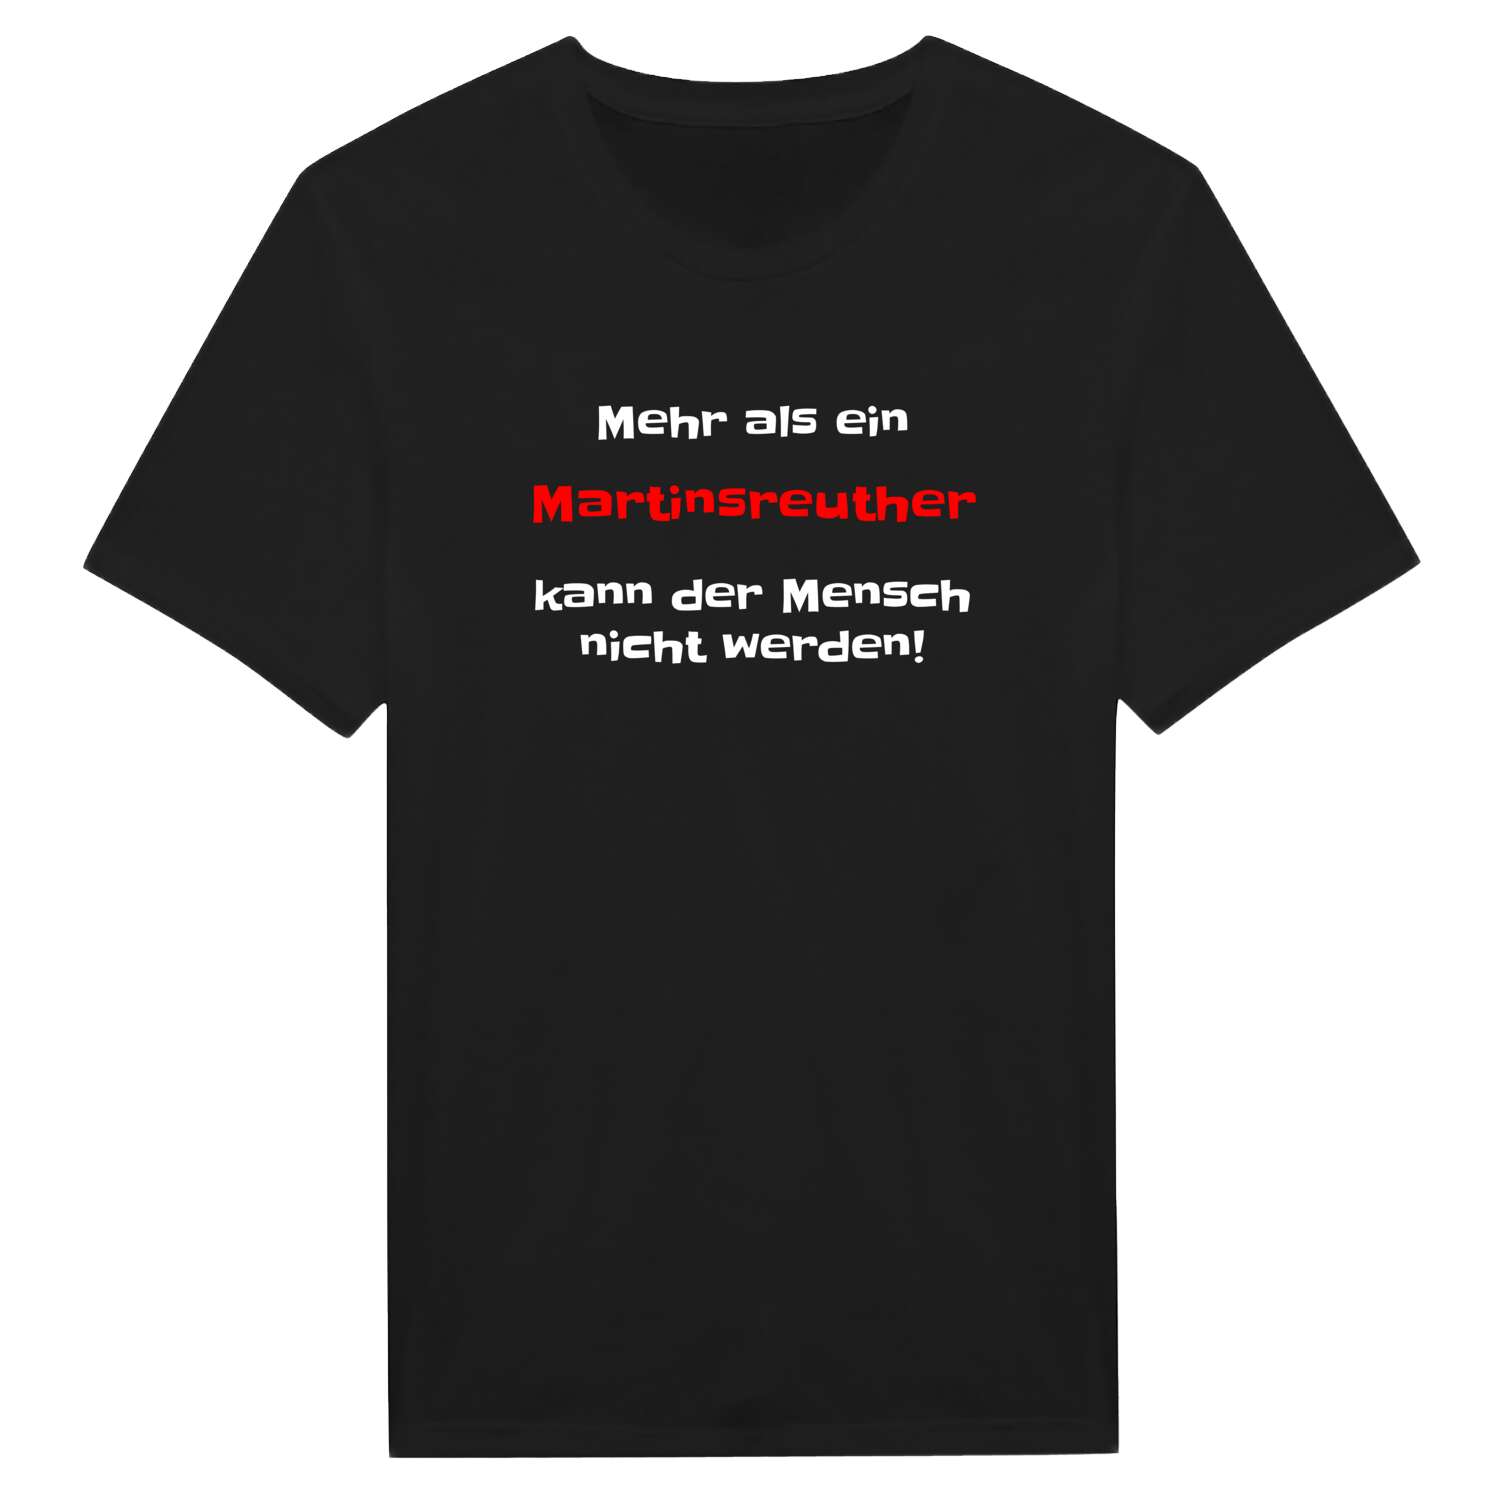 Martinsreuth T-Shirt »Mehr als ein«